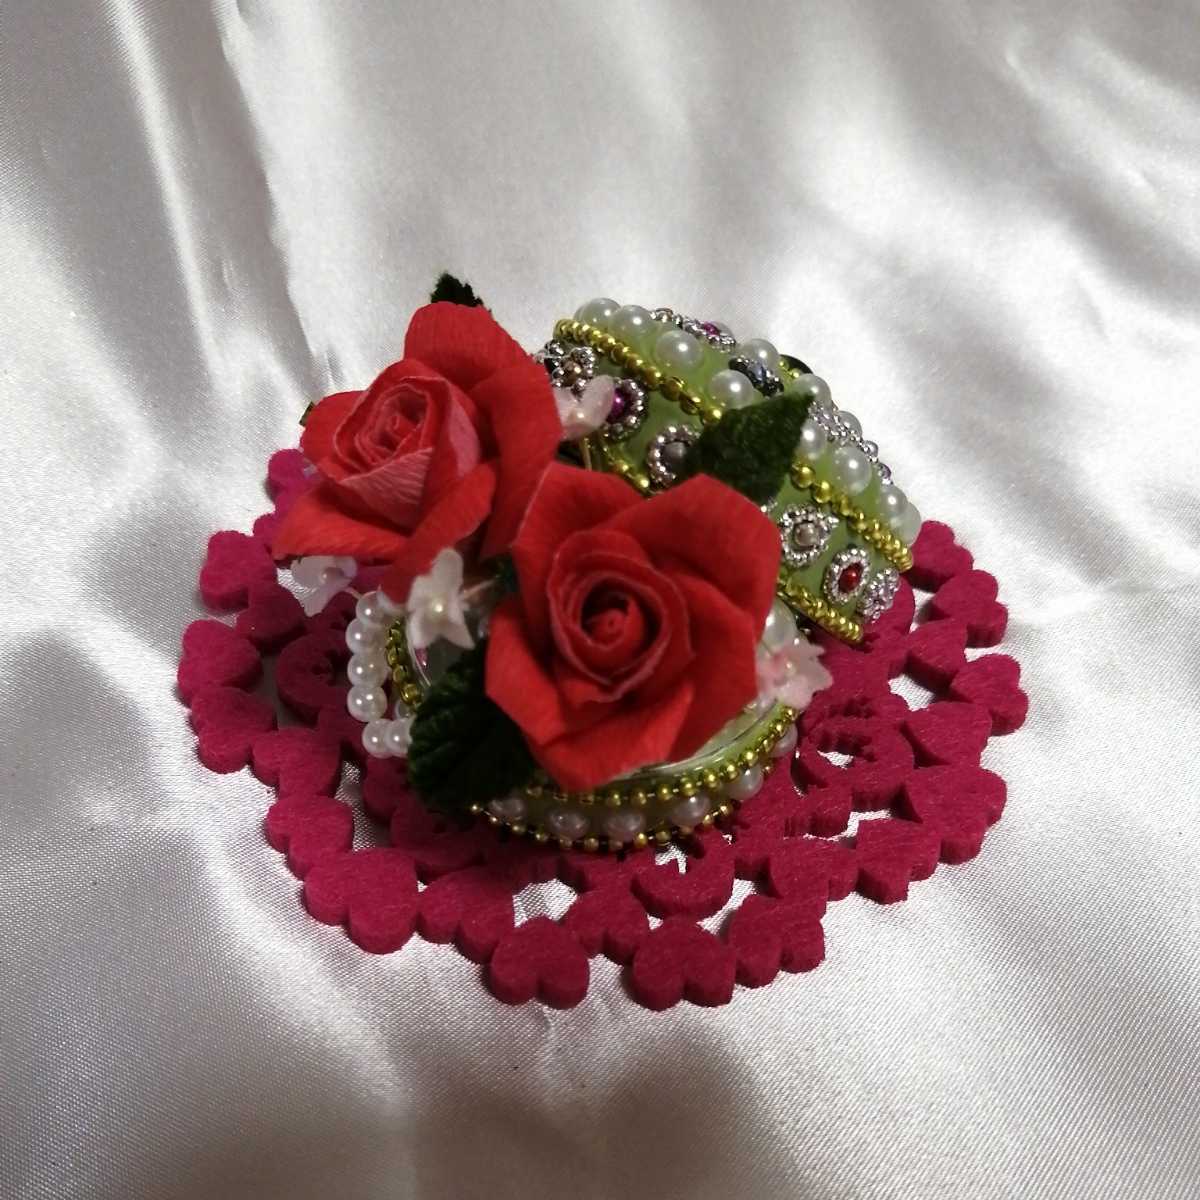 [हस्तनिर्मित] कागज का फूल 1325 ताड़ के आकार का मिनी गुलाब आभूषण बॉक्स★ (लाल x पन्ना हरा केस) कागज विवाह उत्सव उपहार!, हस्तनिर्मित कार्य, आंतरिक भाग, विविध वस्तुएं, आभूषण, वस्तु